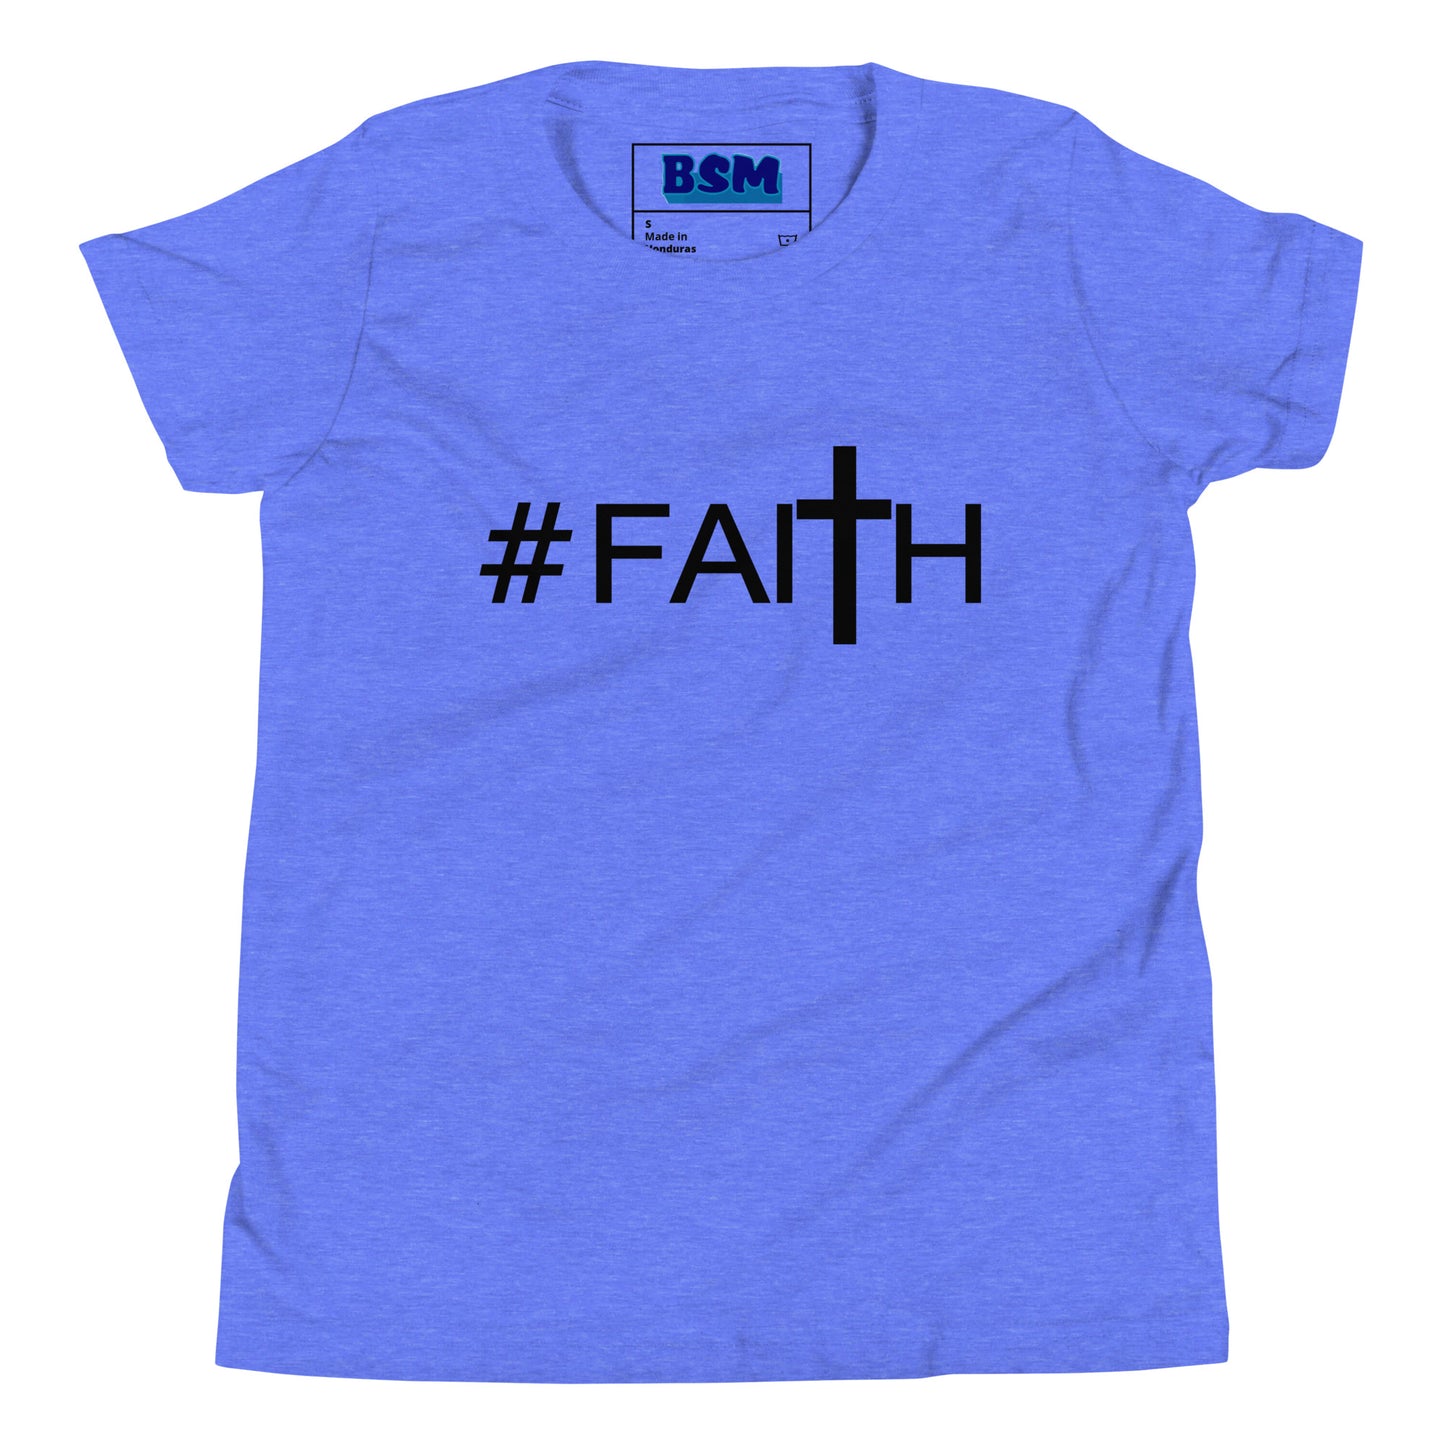 Hashtag Faith Youth T-Shirt